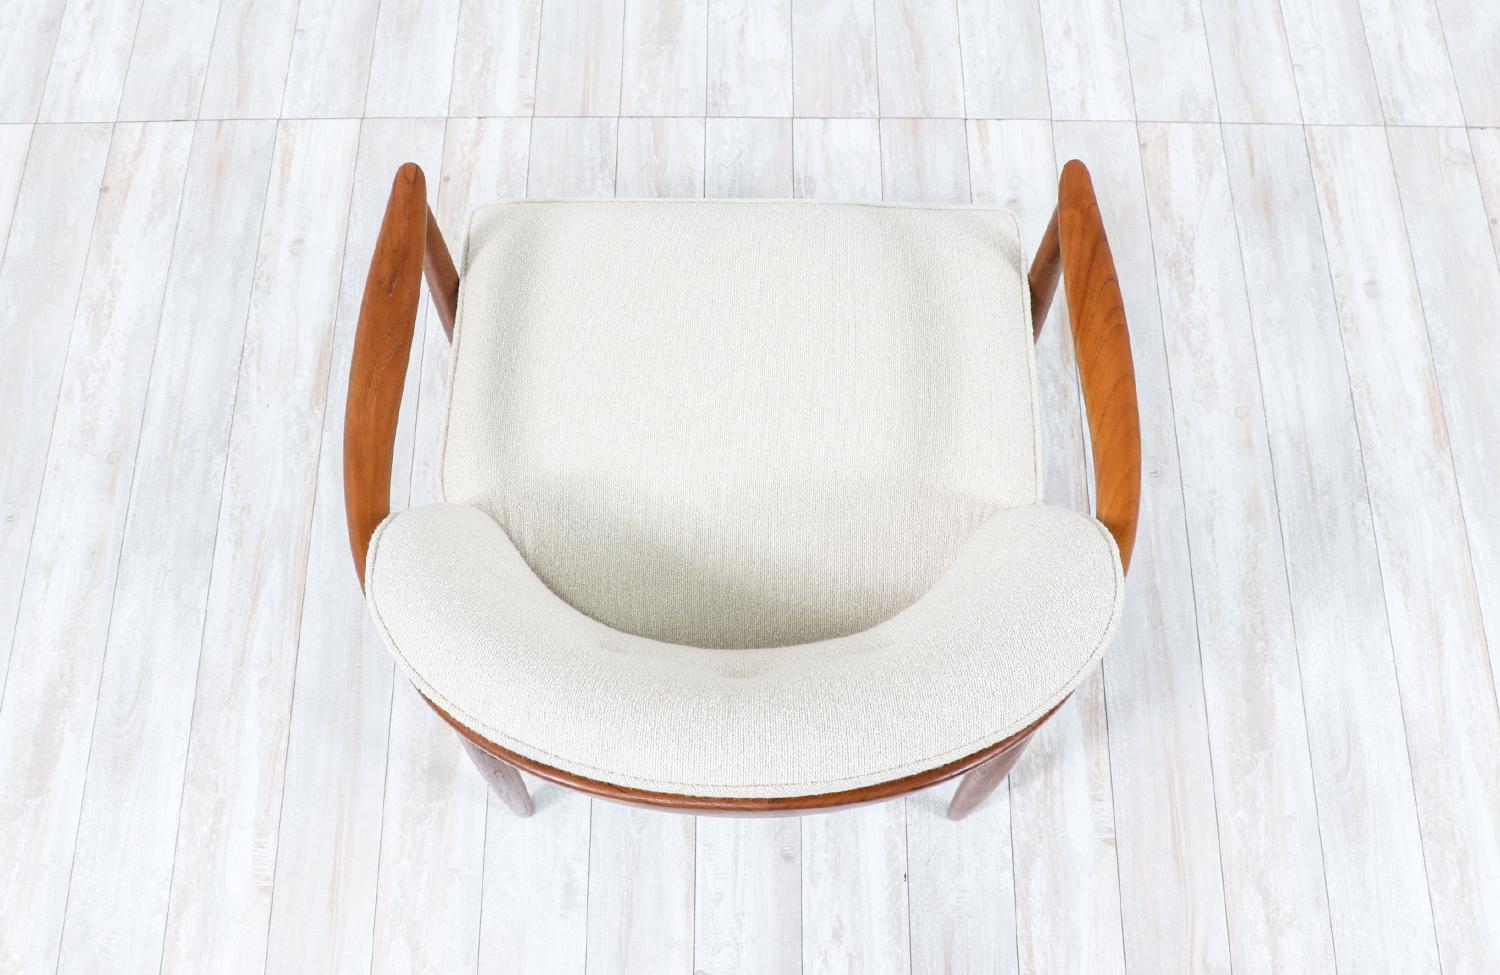  Expertly Restored - Danish Modern Teak Lounge Chair by Finn Andersen for Selig For Sale 2